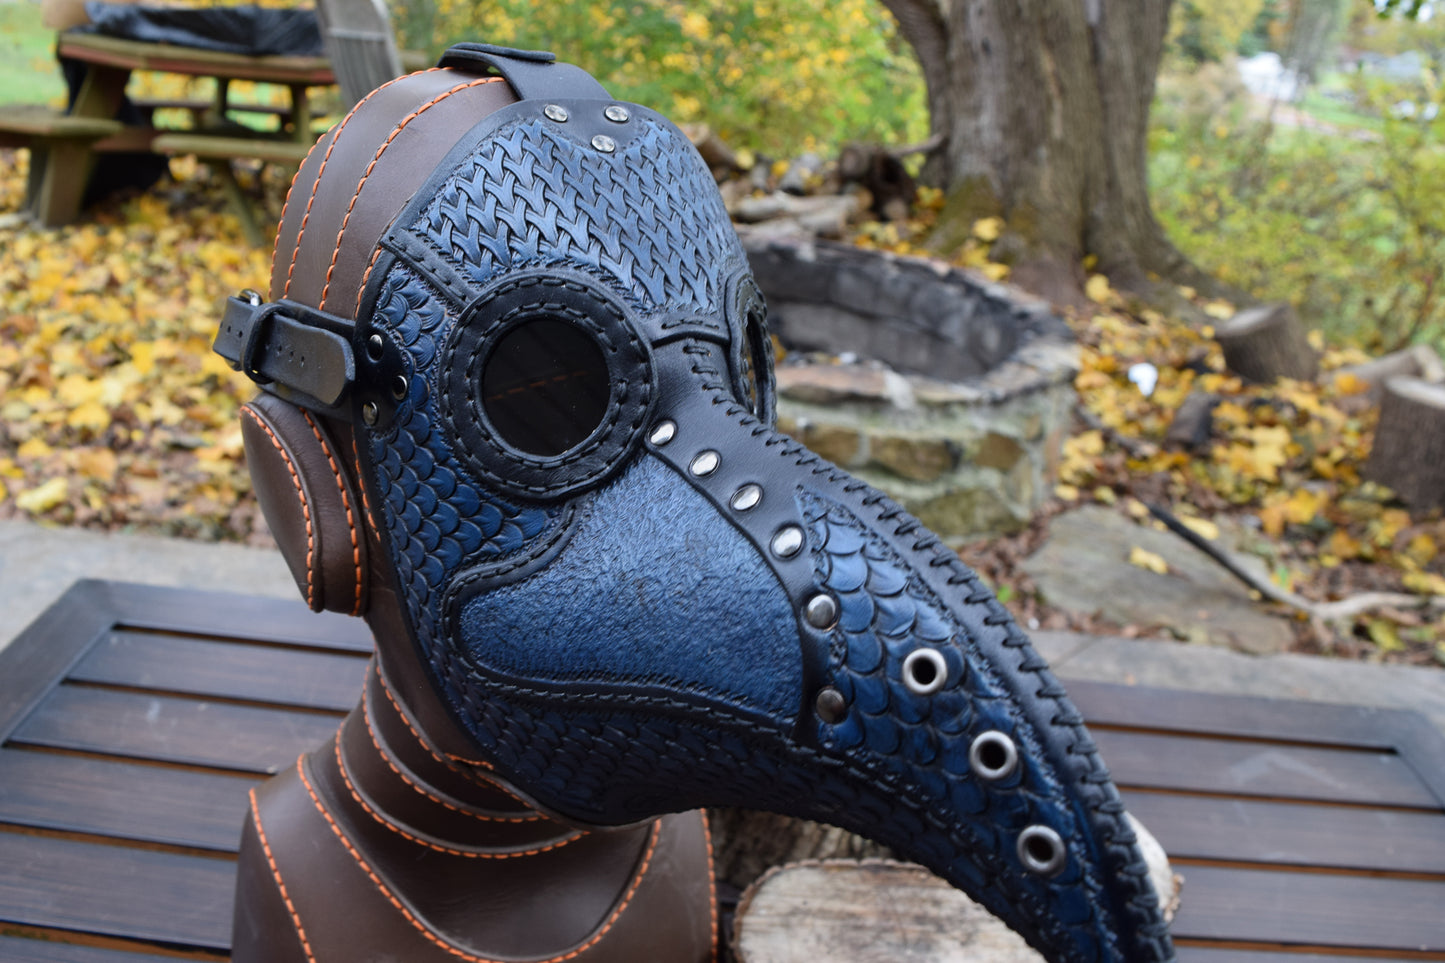 Stamped Leather Plague Doctor mask - Black/Blue (Choose lens color)